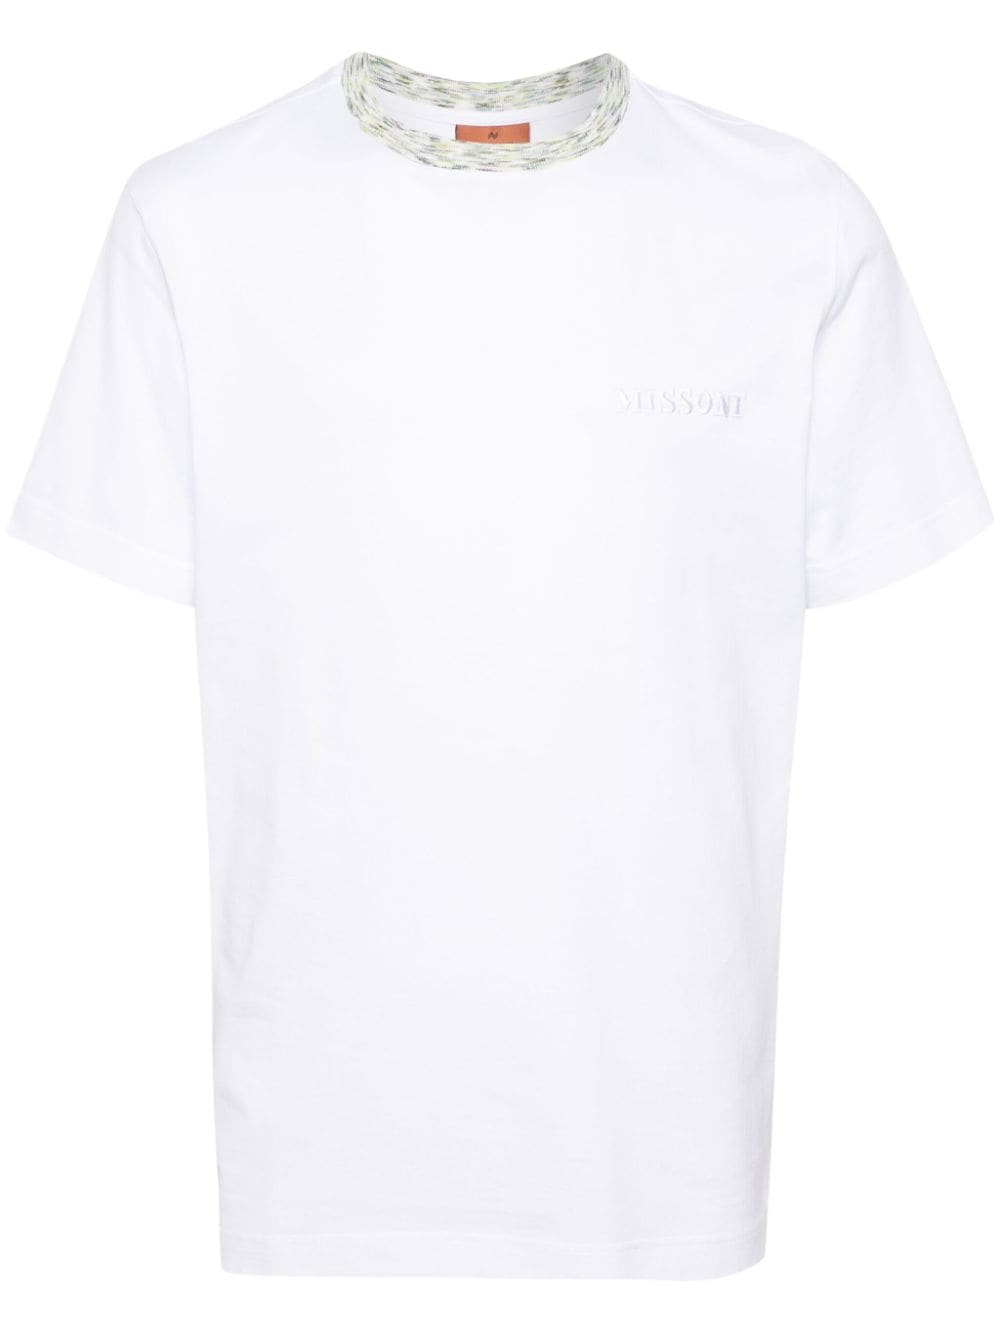 T-shirt blanc avec broderie